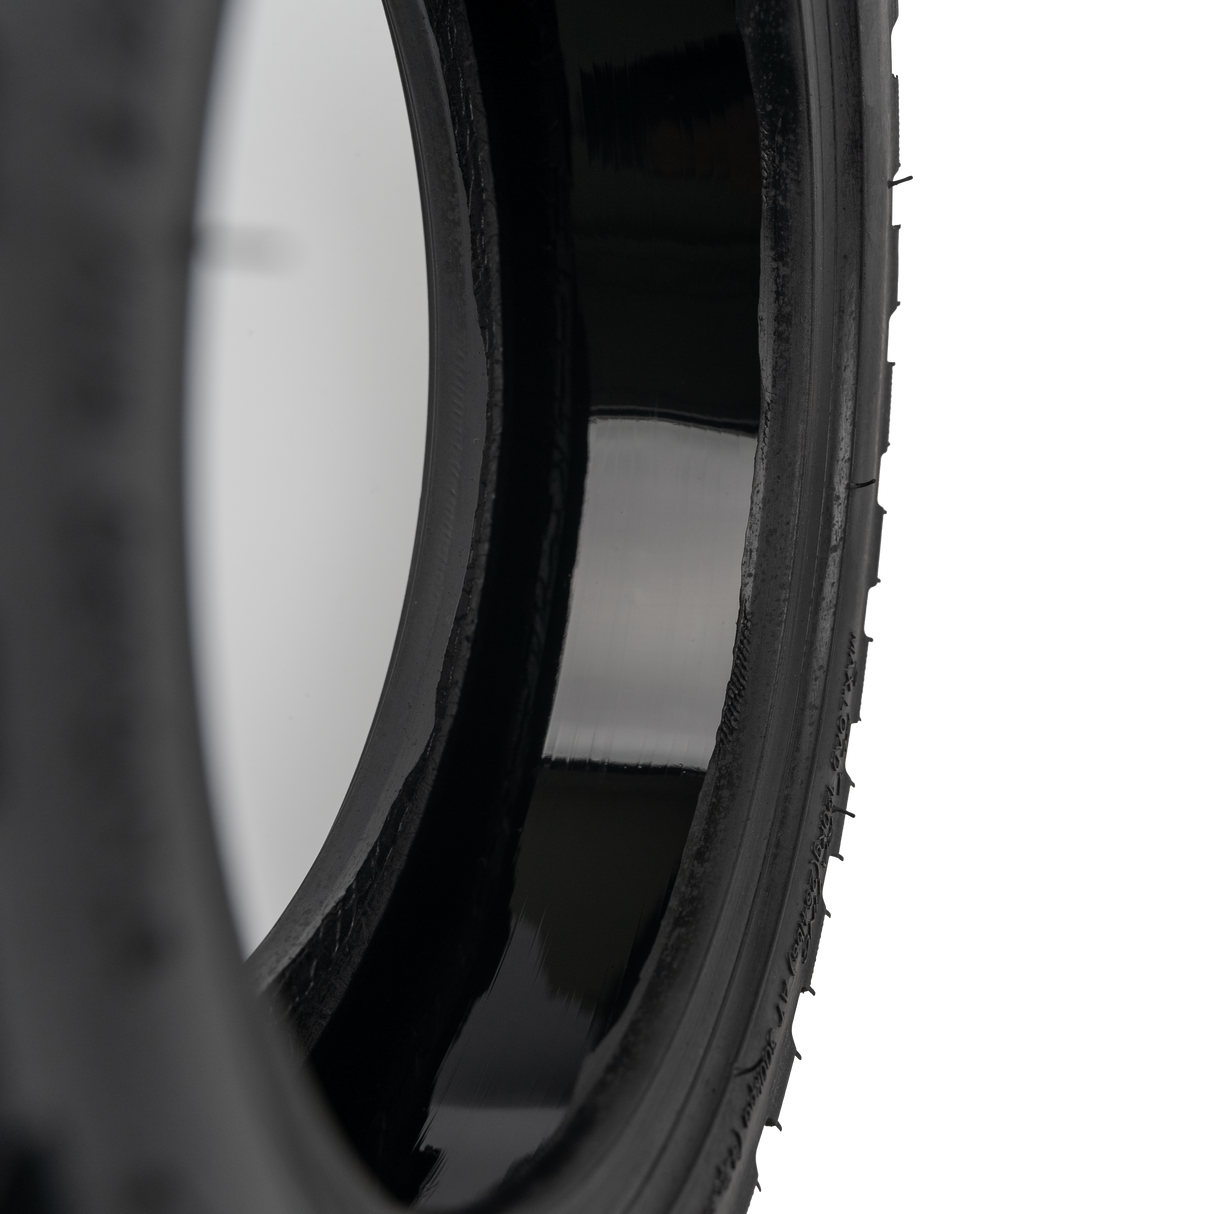 G2 Pro 10" Self Repair Tyre | [EnviroRides]